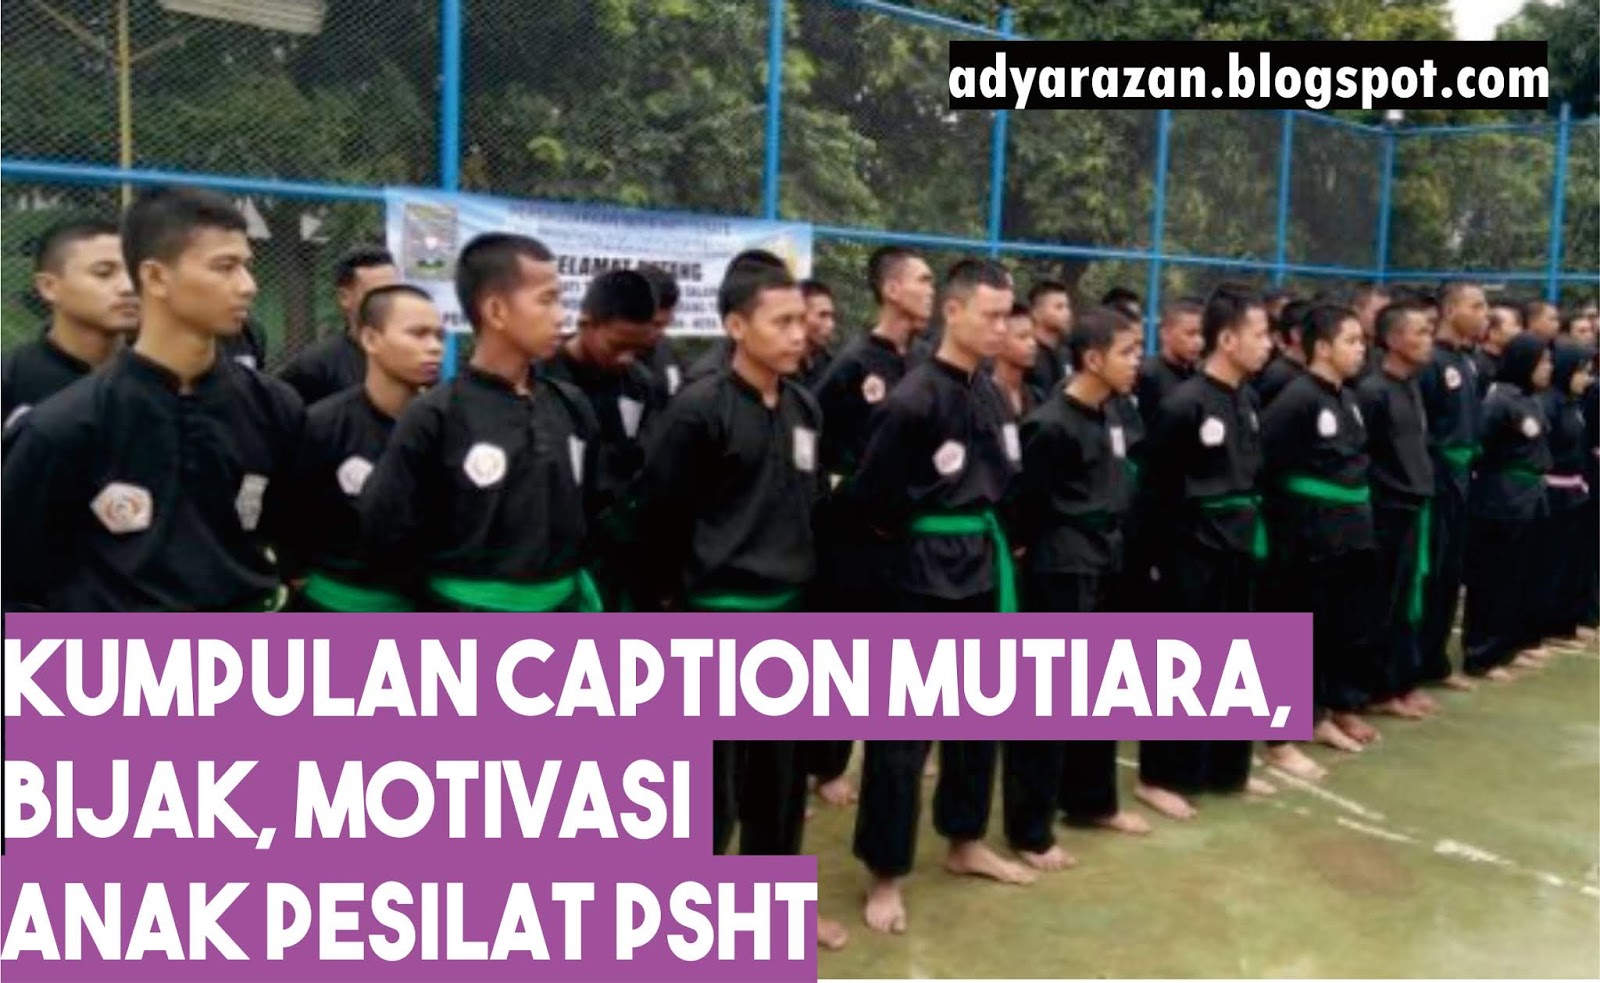 Kumpulan Caption Mutiara